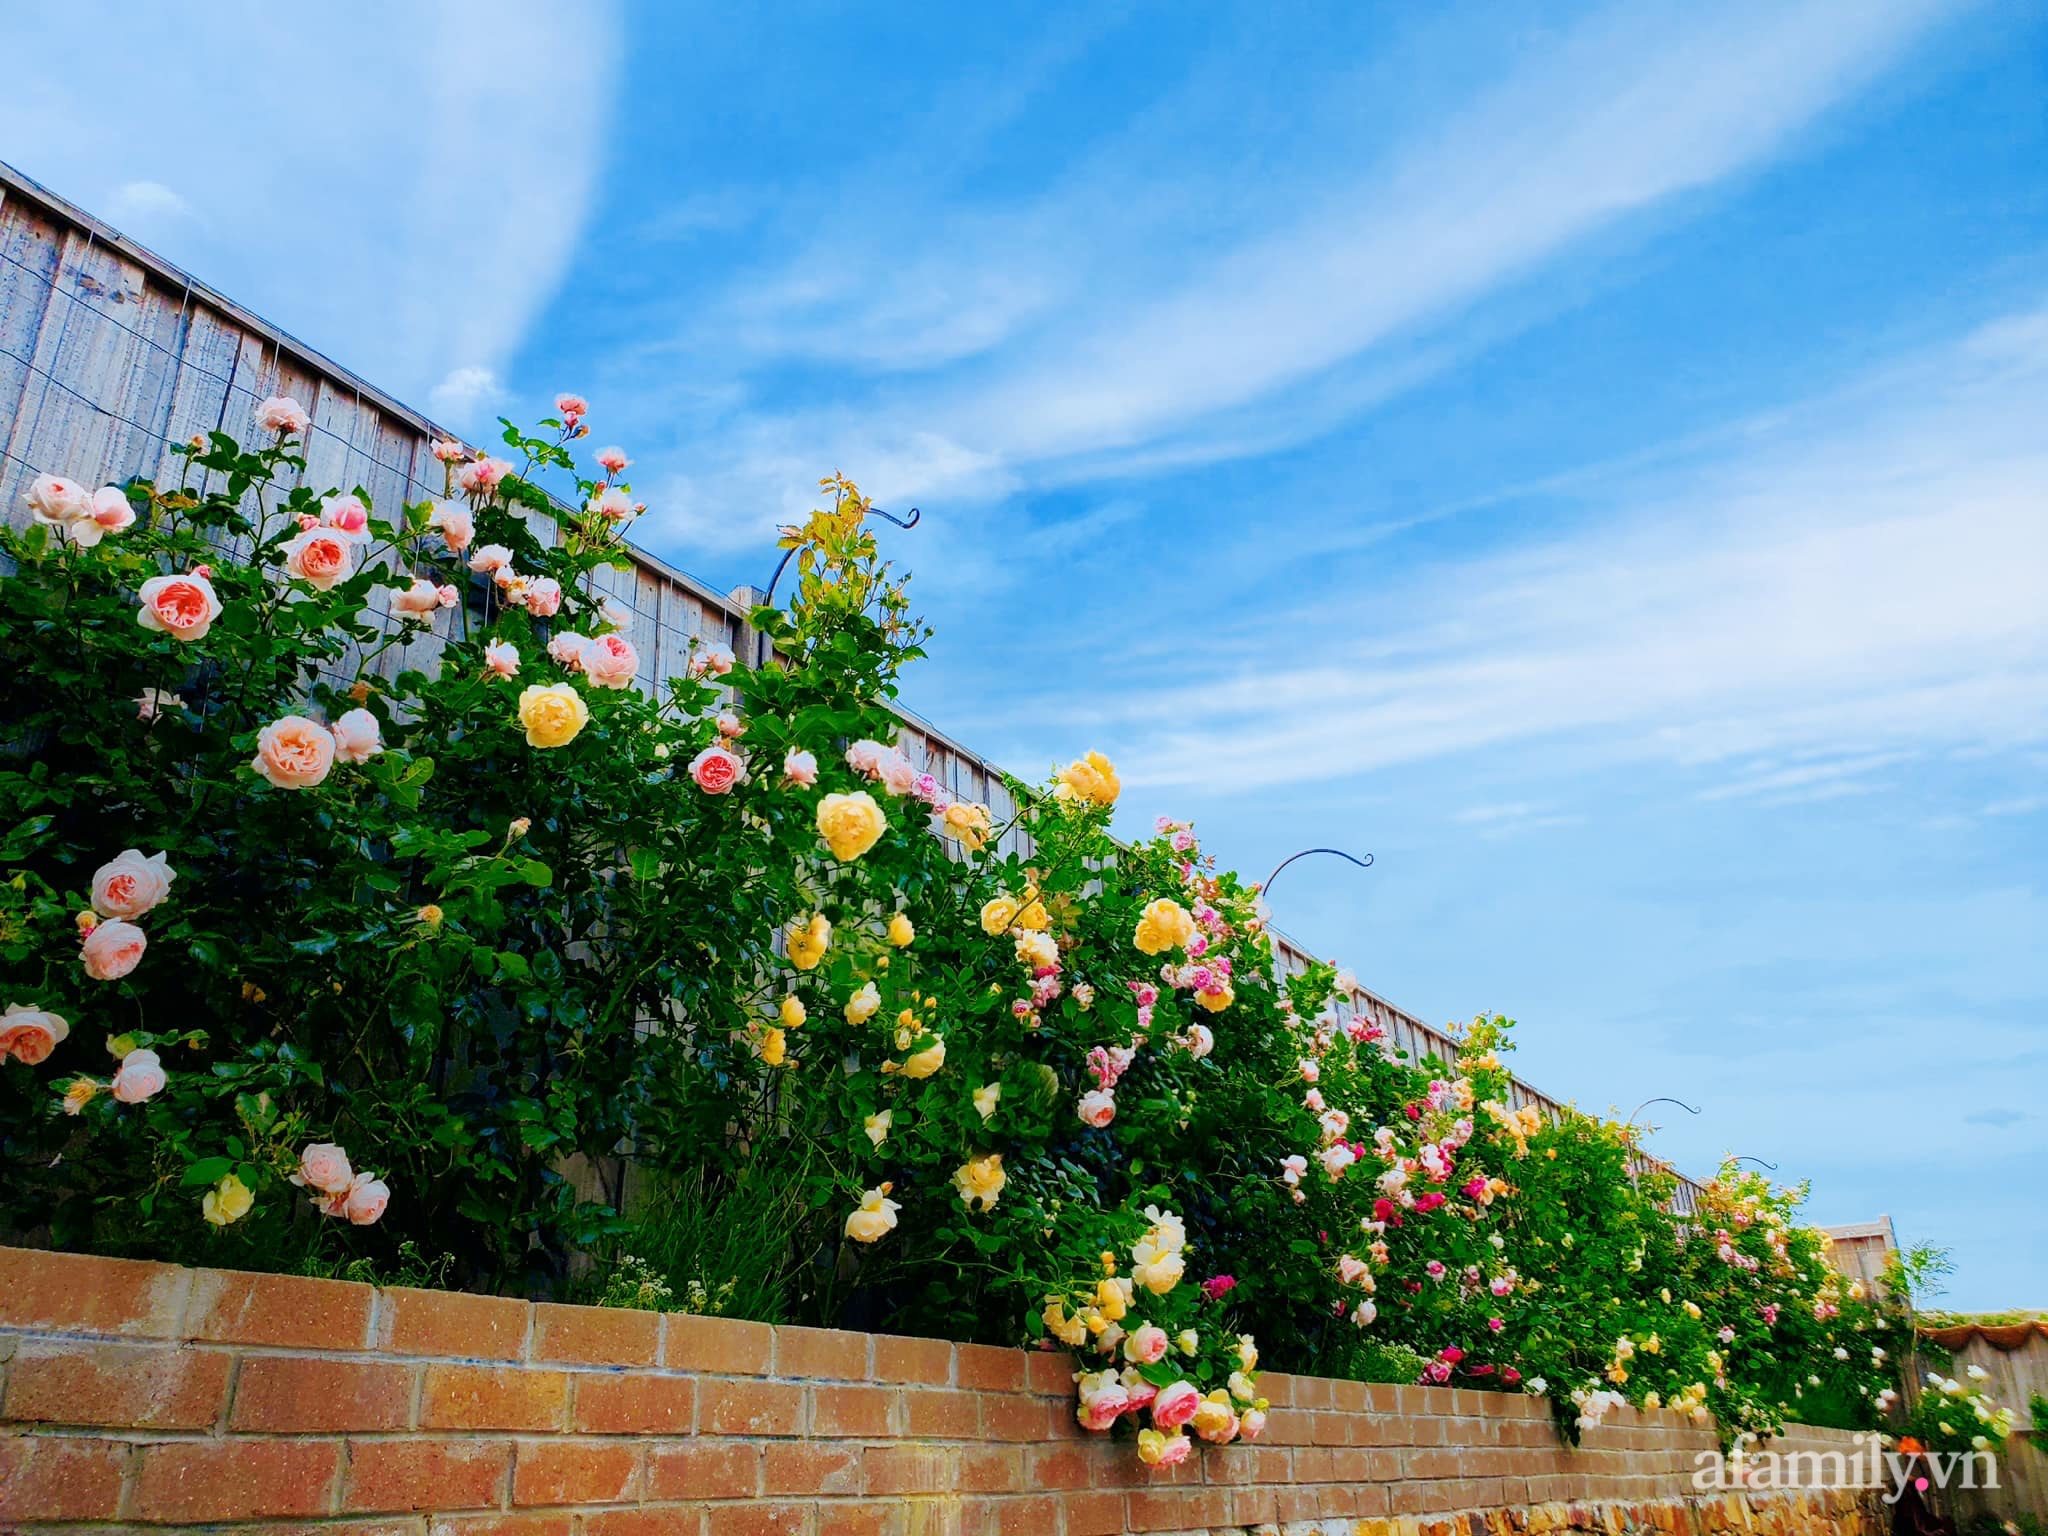 Vườn hồng 250m² ngát hương rực rỡ sắc màu đẹp như cổ tích của mẹ Việt ở Úc - Ảnh 20.